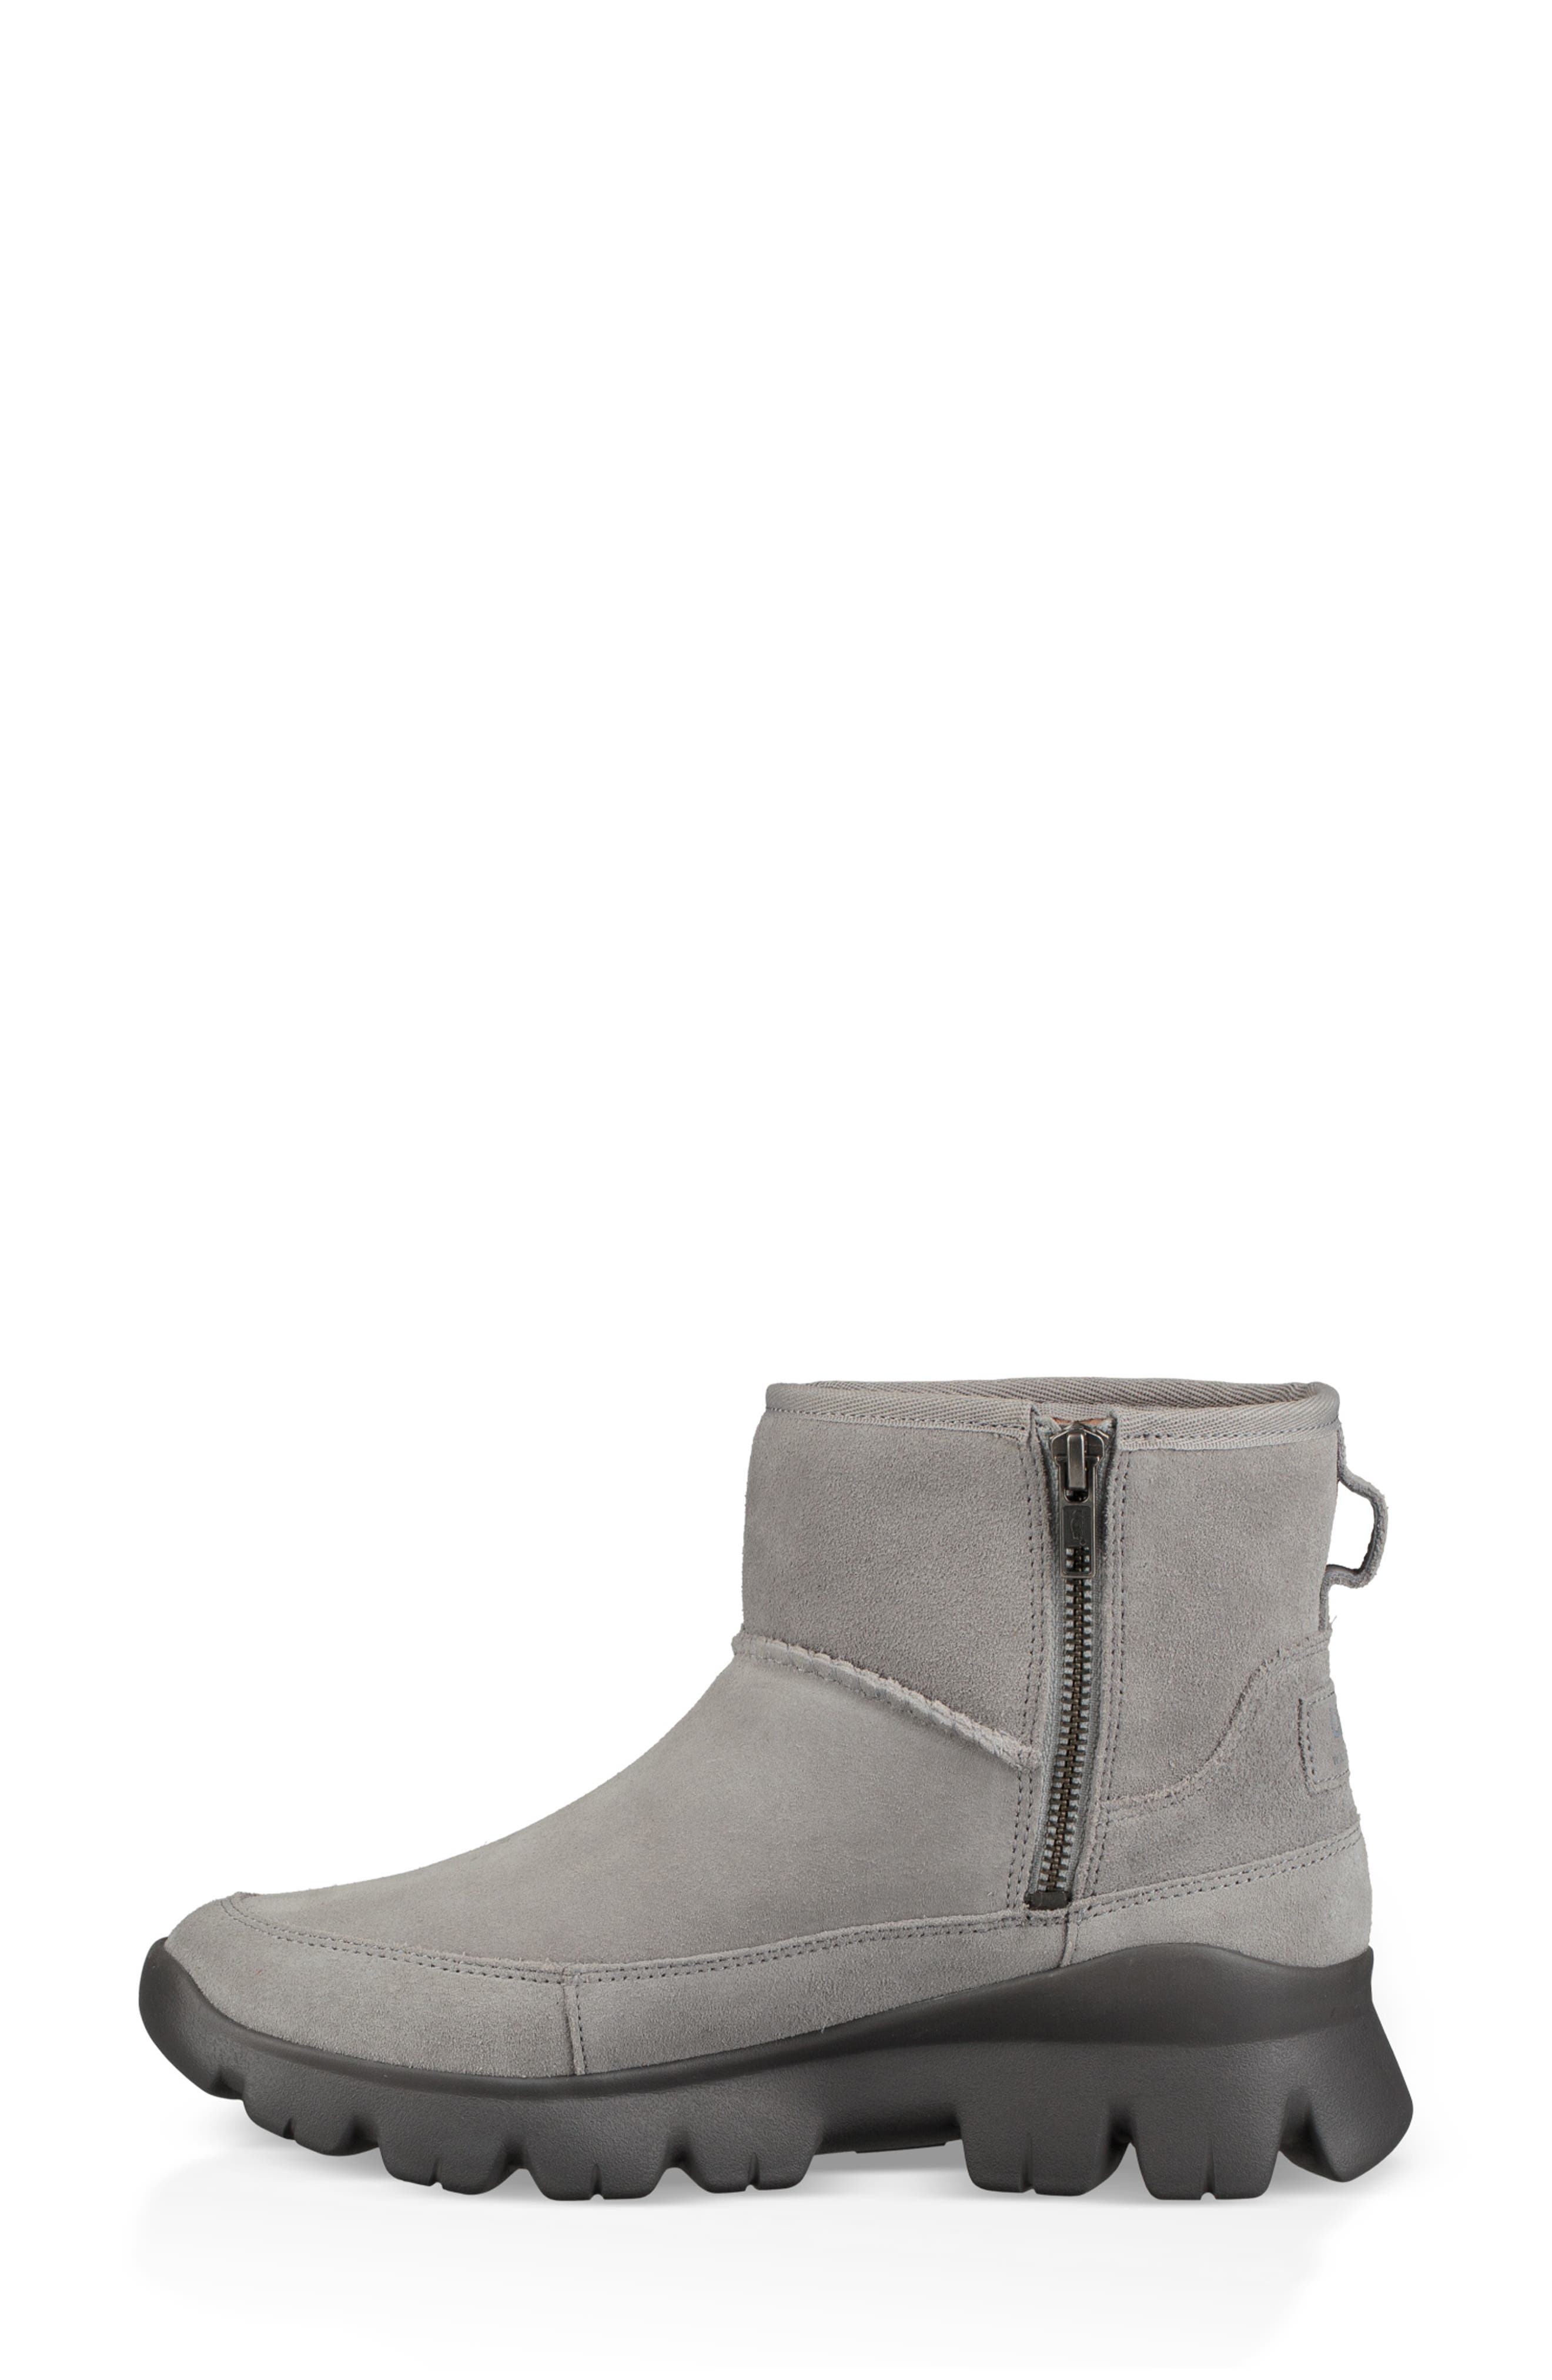 palomar waterproof snow boot